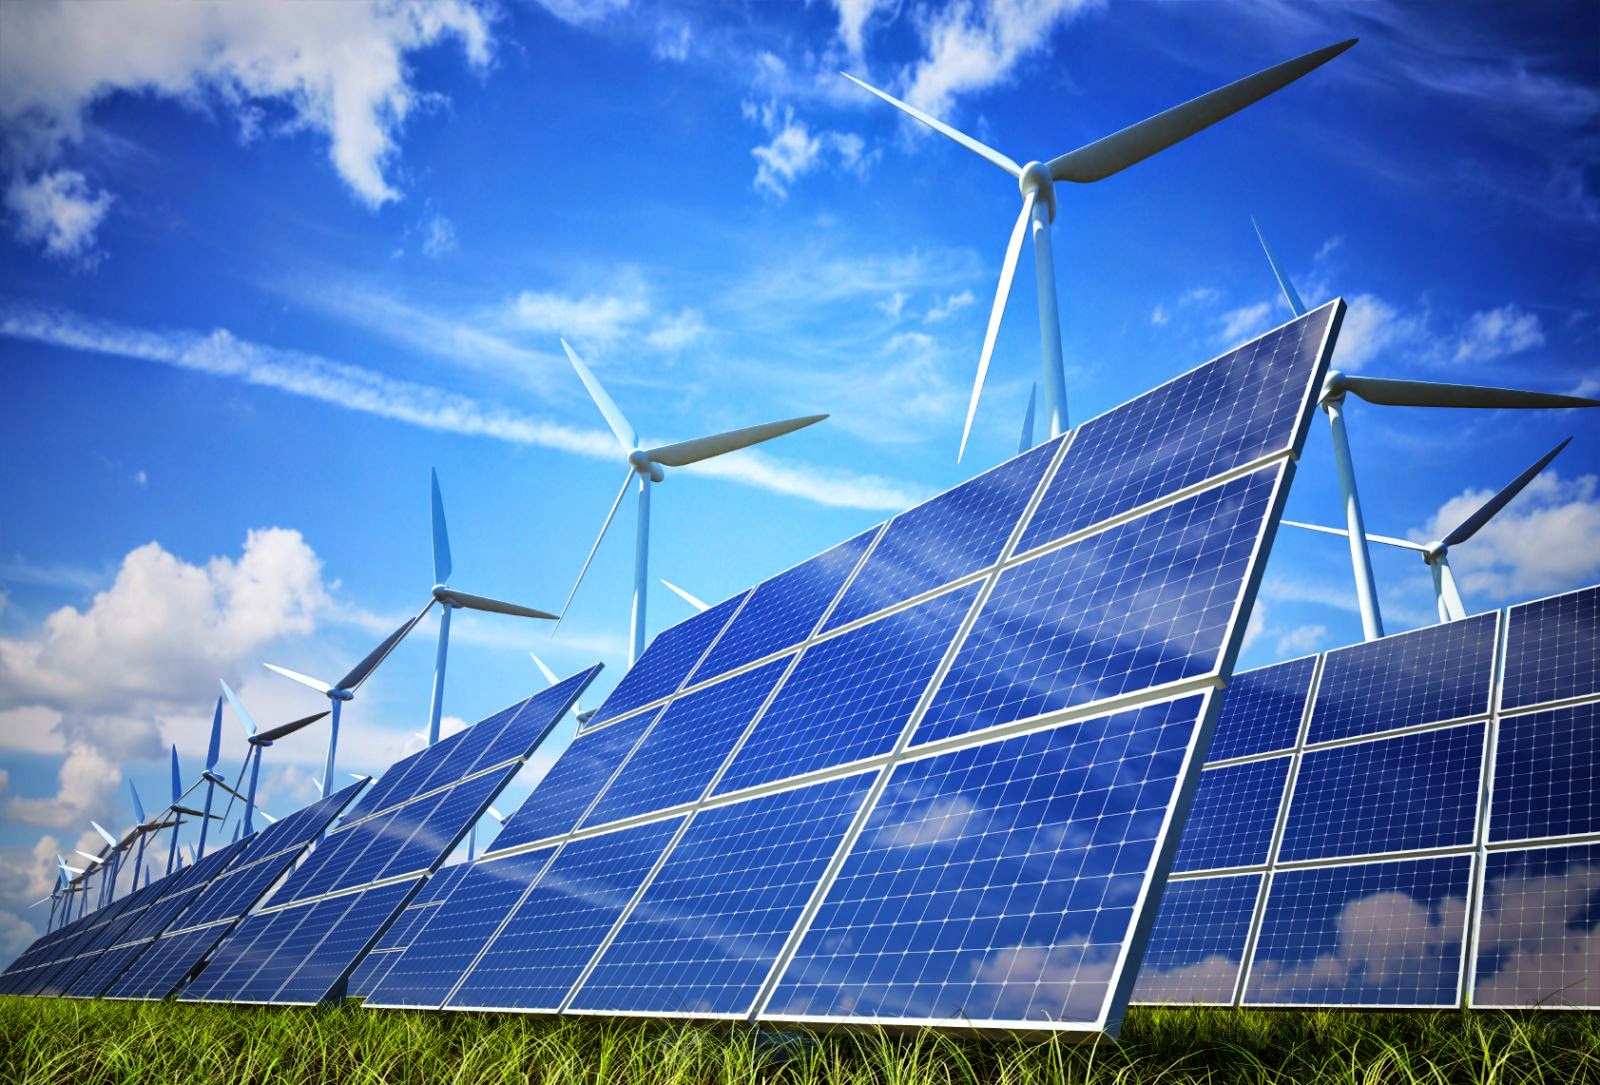 Energias renováveis - conheça todas as vantagens e reduza a sua pegada